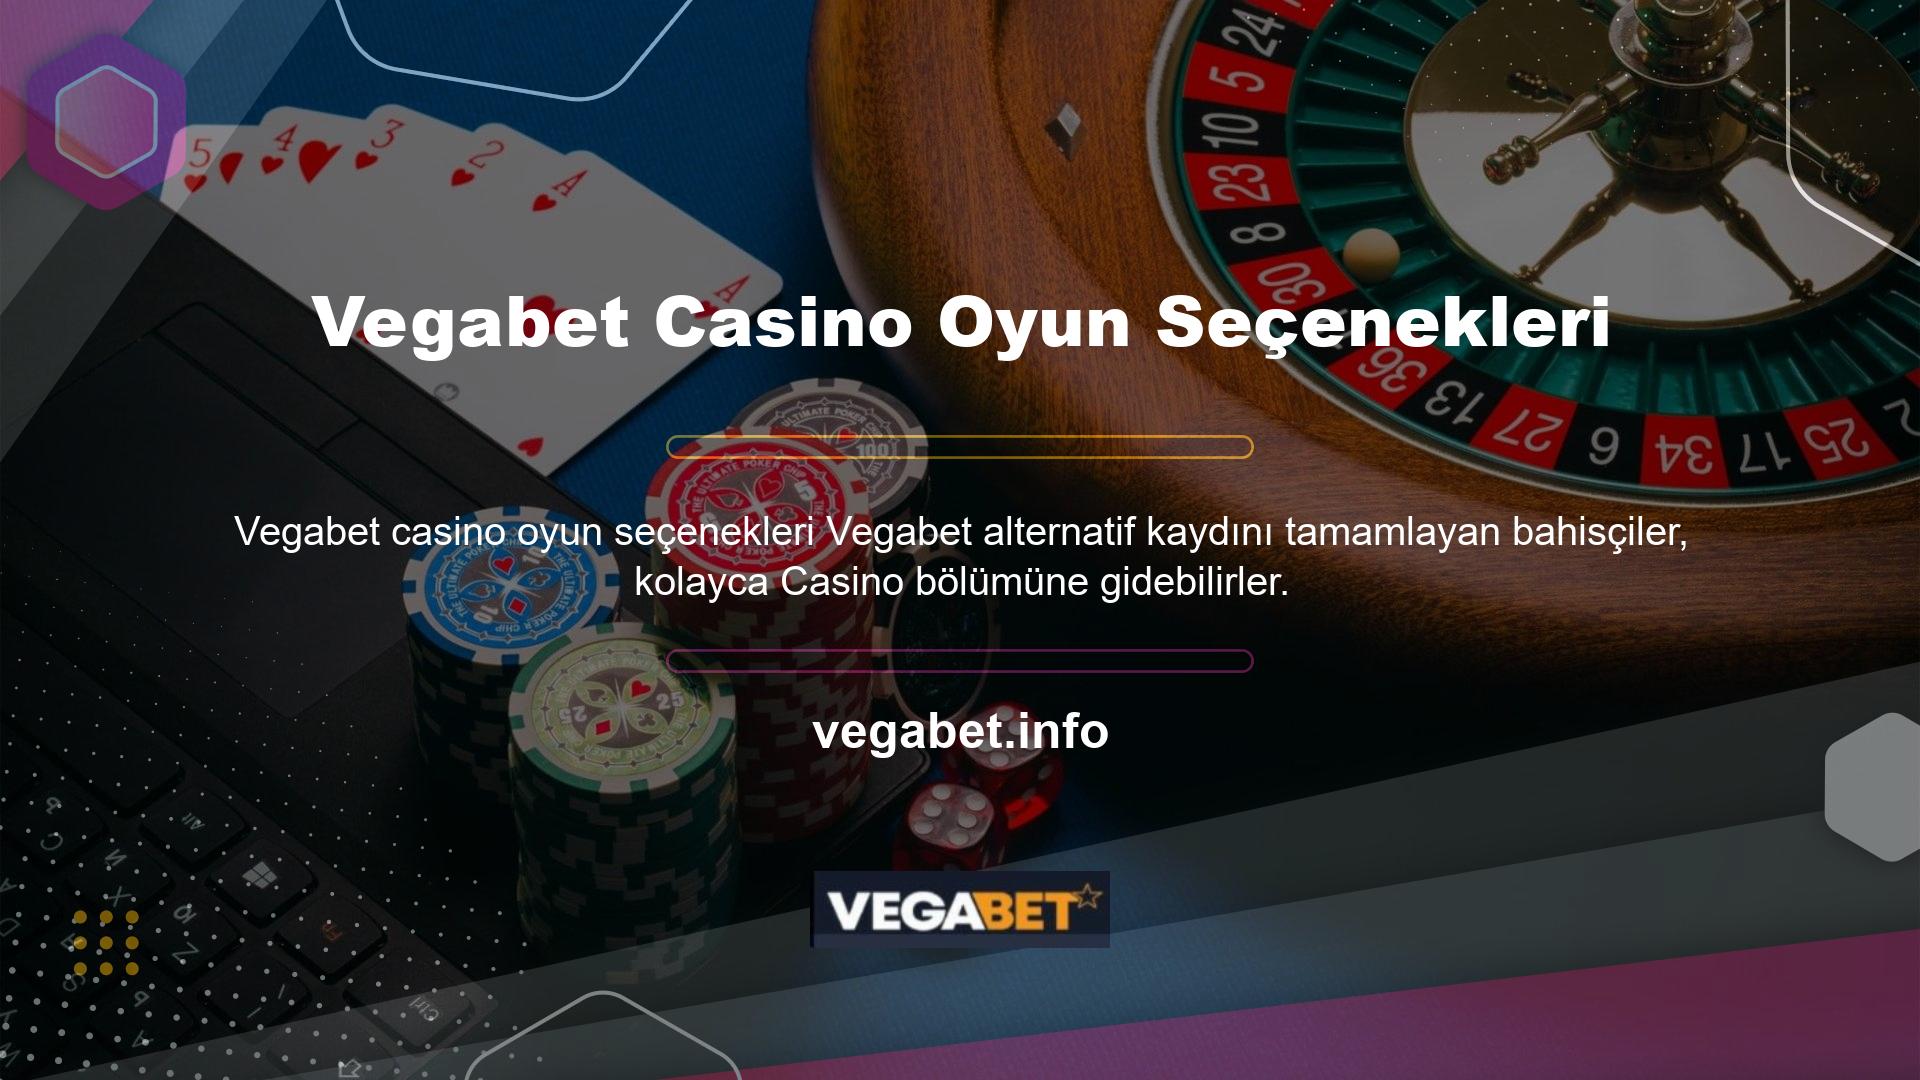 Vegabet web sitesi, dünyanın her yerinden oyun geliştiricilerle çalışarak casino oynamayı sevenler için faydalı hale geliyor